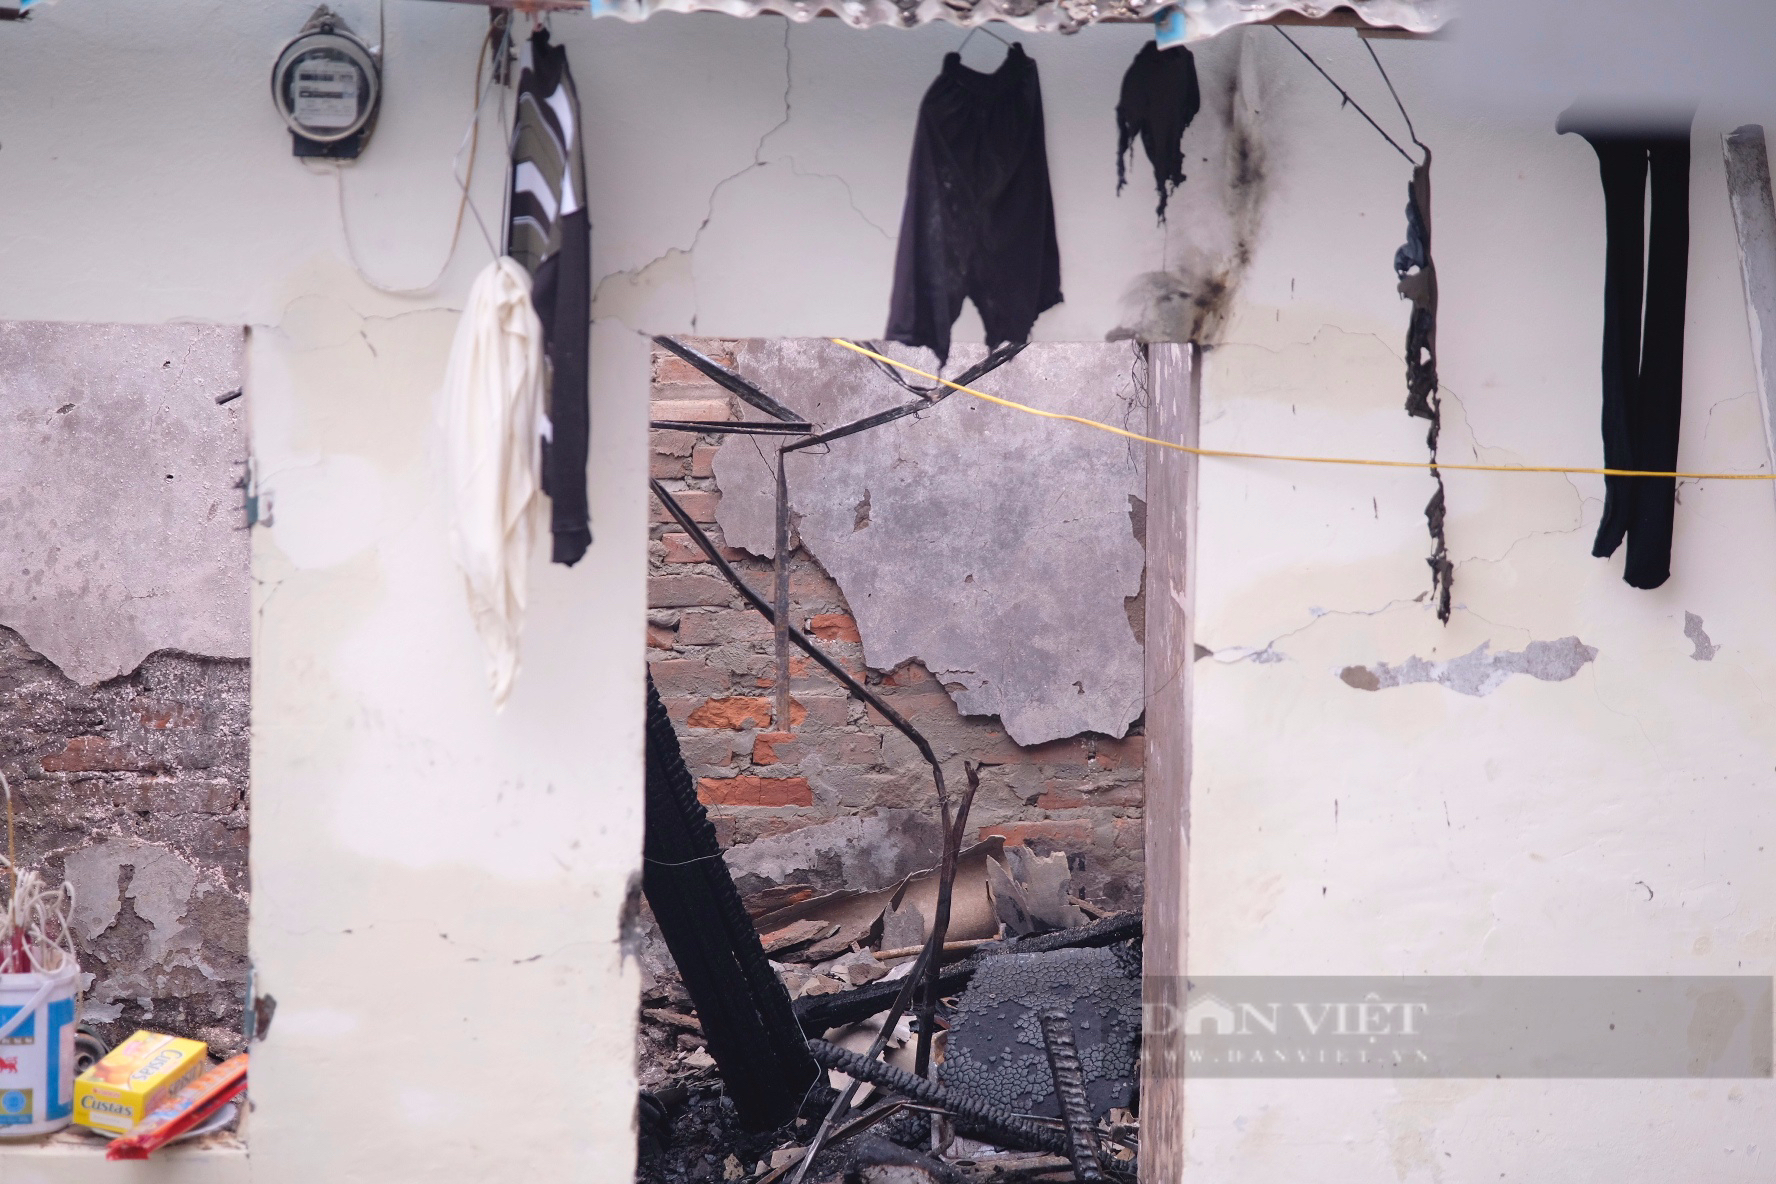 Hiện trường tan hoang, đổ nát sau nổ lớn ở Hà Nội, 3 người cùng gia đình tử vong thương tâm - Ảnh 5.